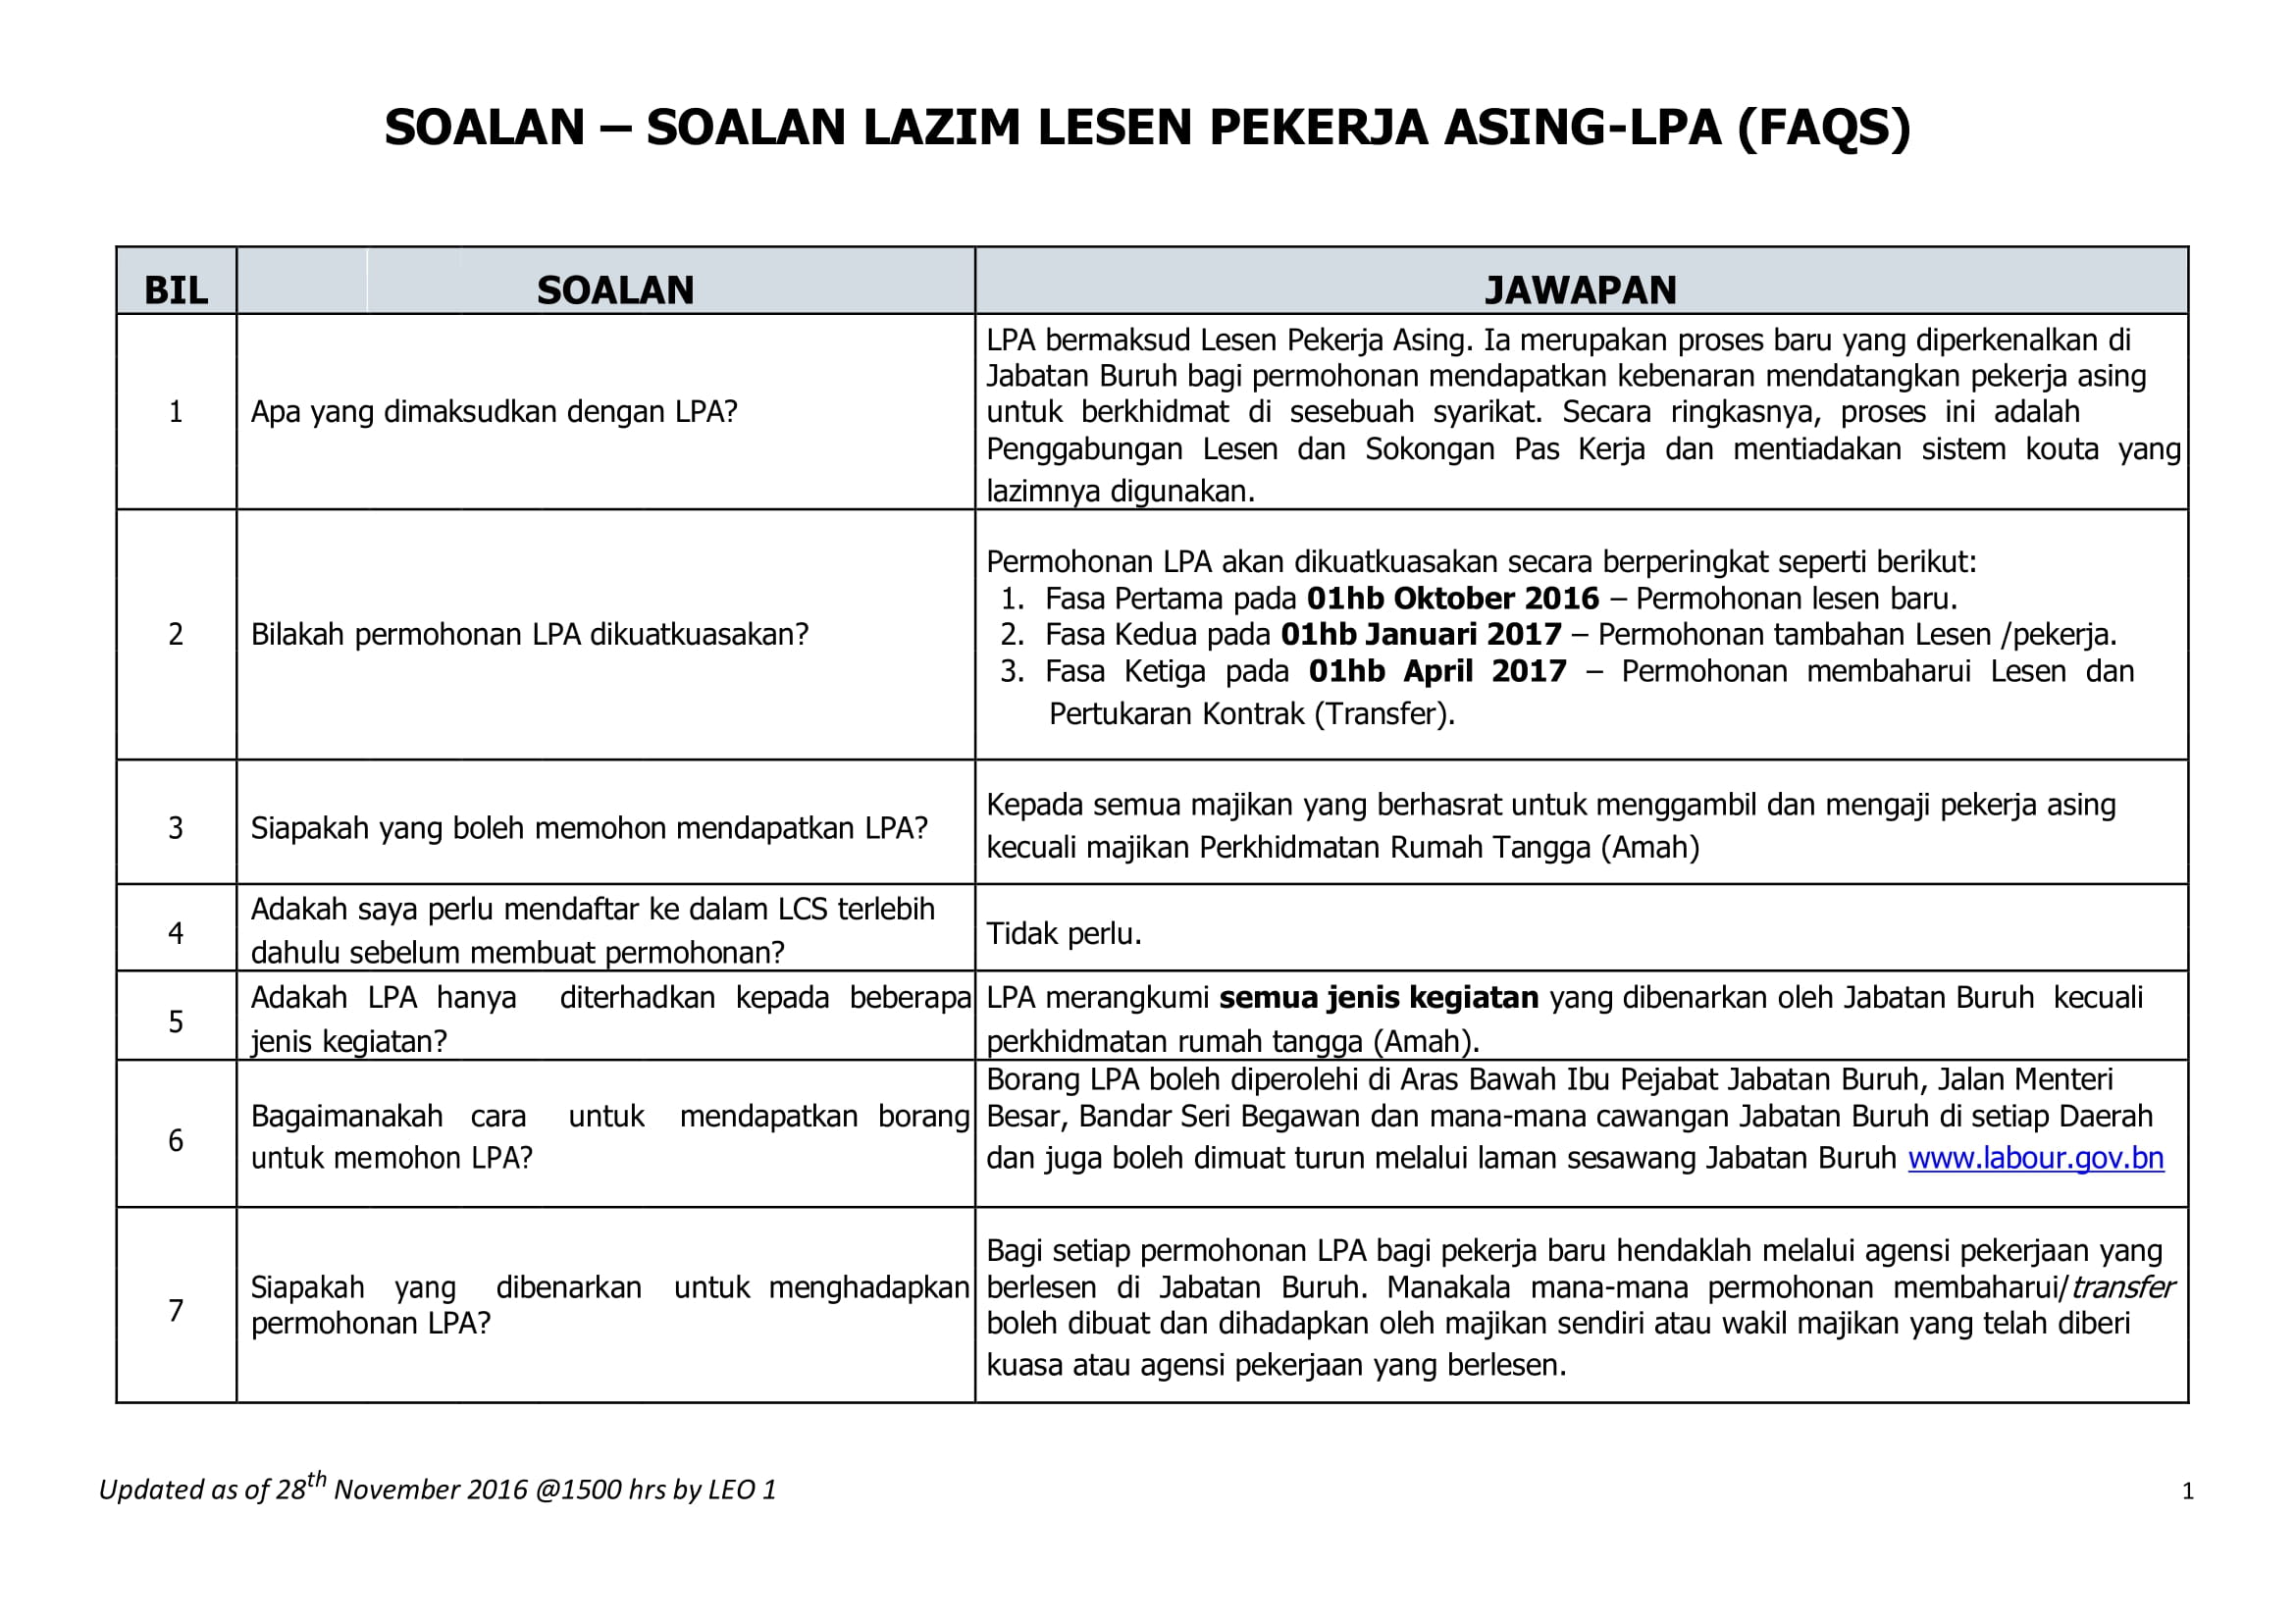 FAQ malay version-1.jpg